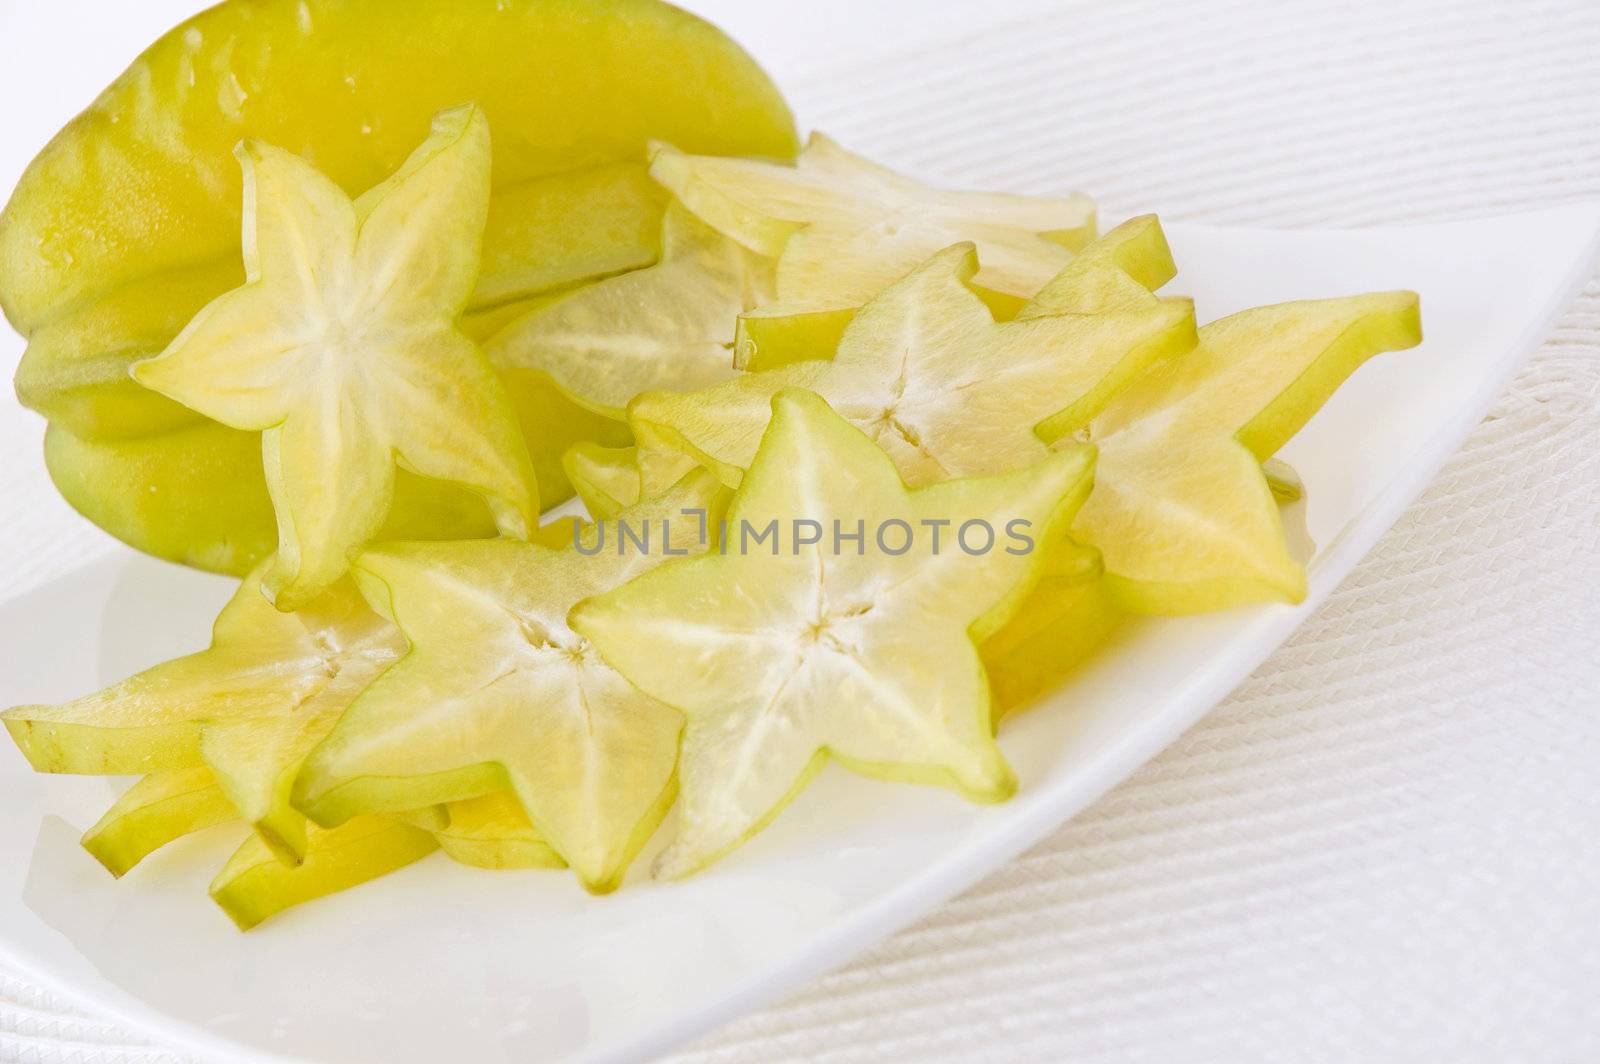 fresh starfruit and sliced starfruit on white plate